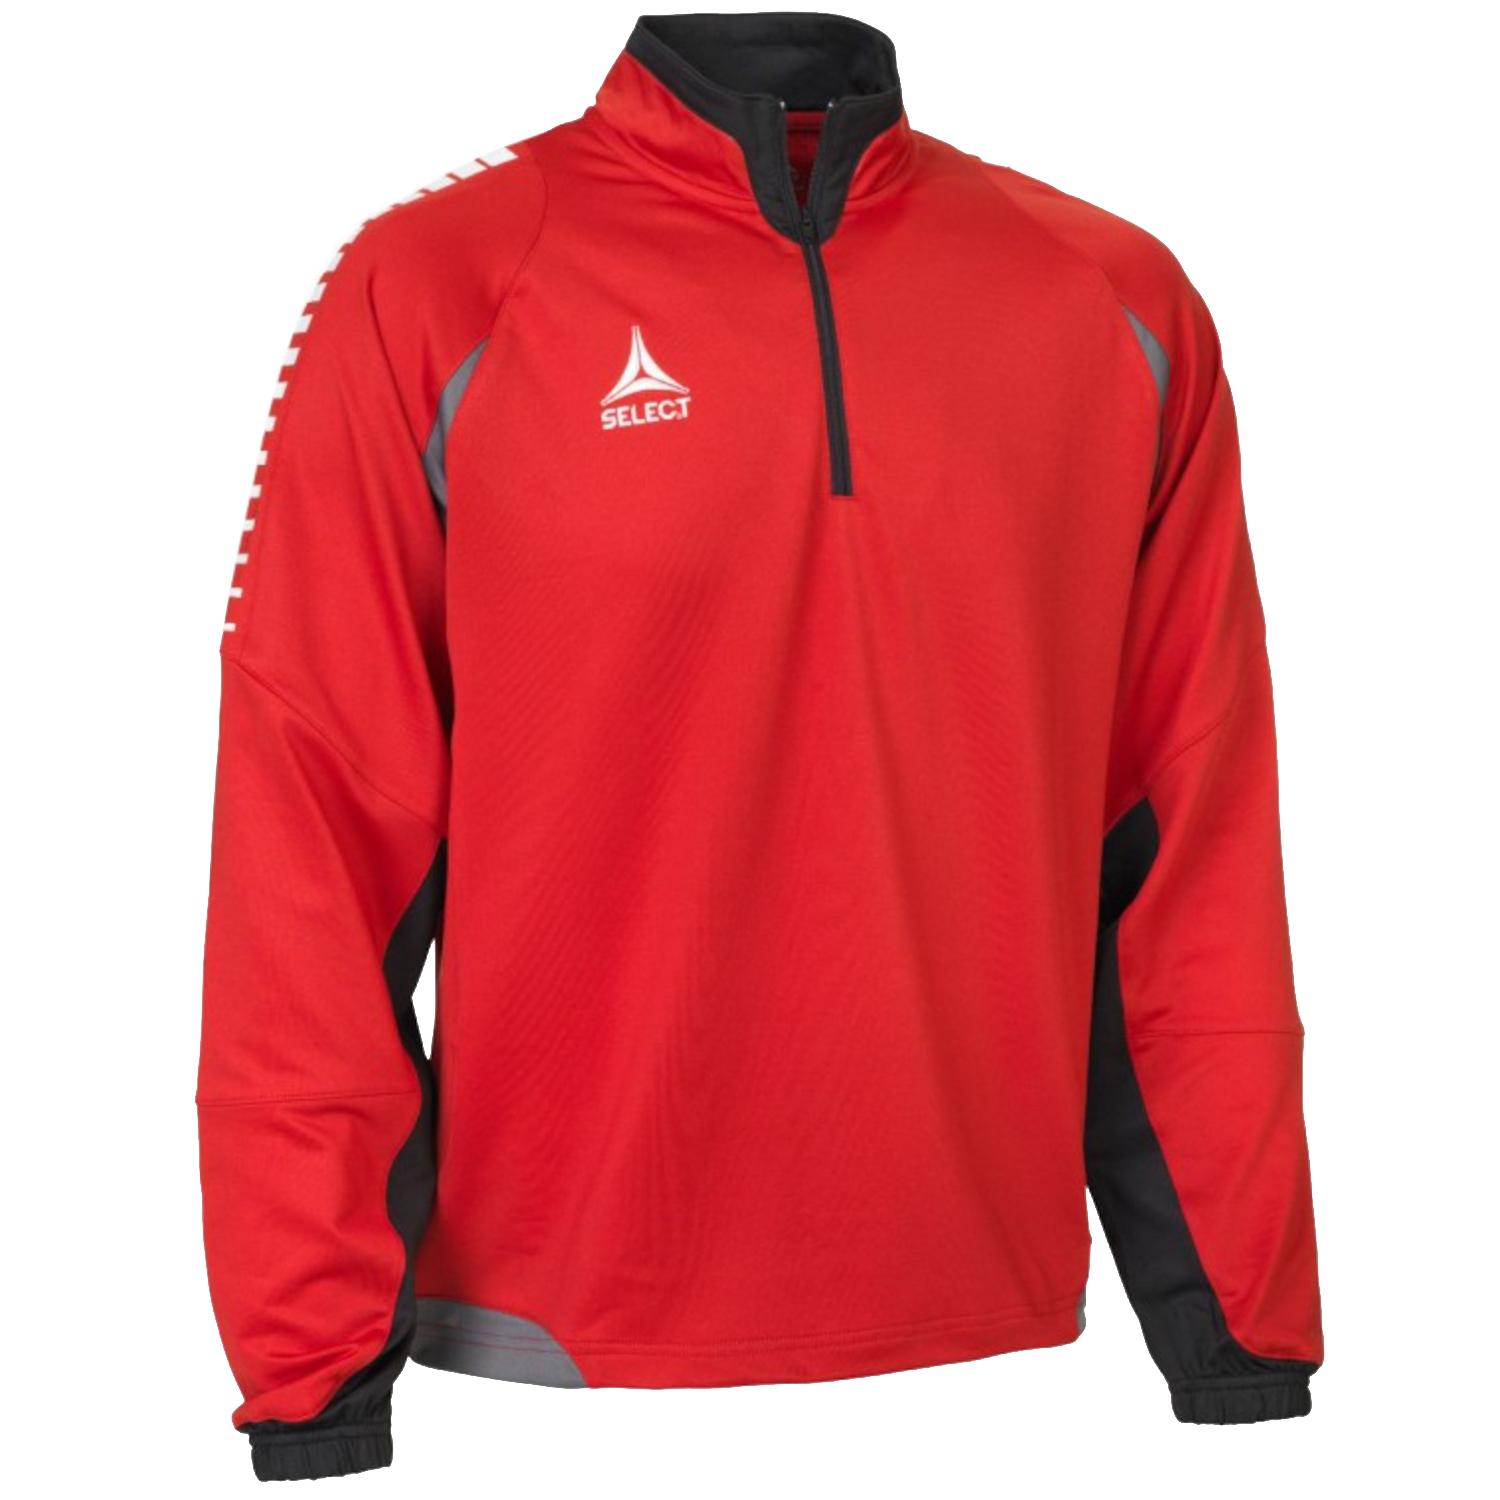 Select Chile 1/2 Zip Hoodie, Mens red Sweatshirt